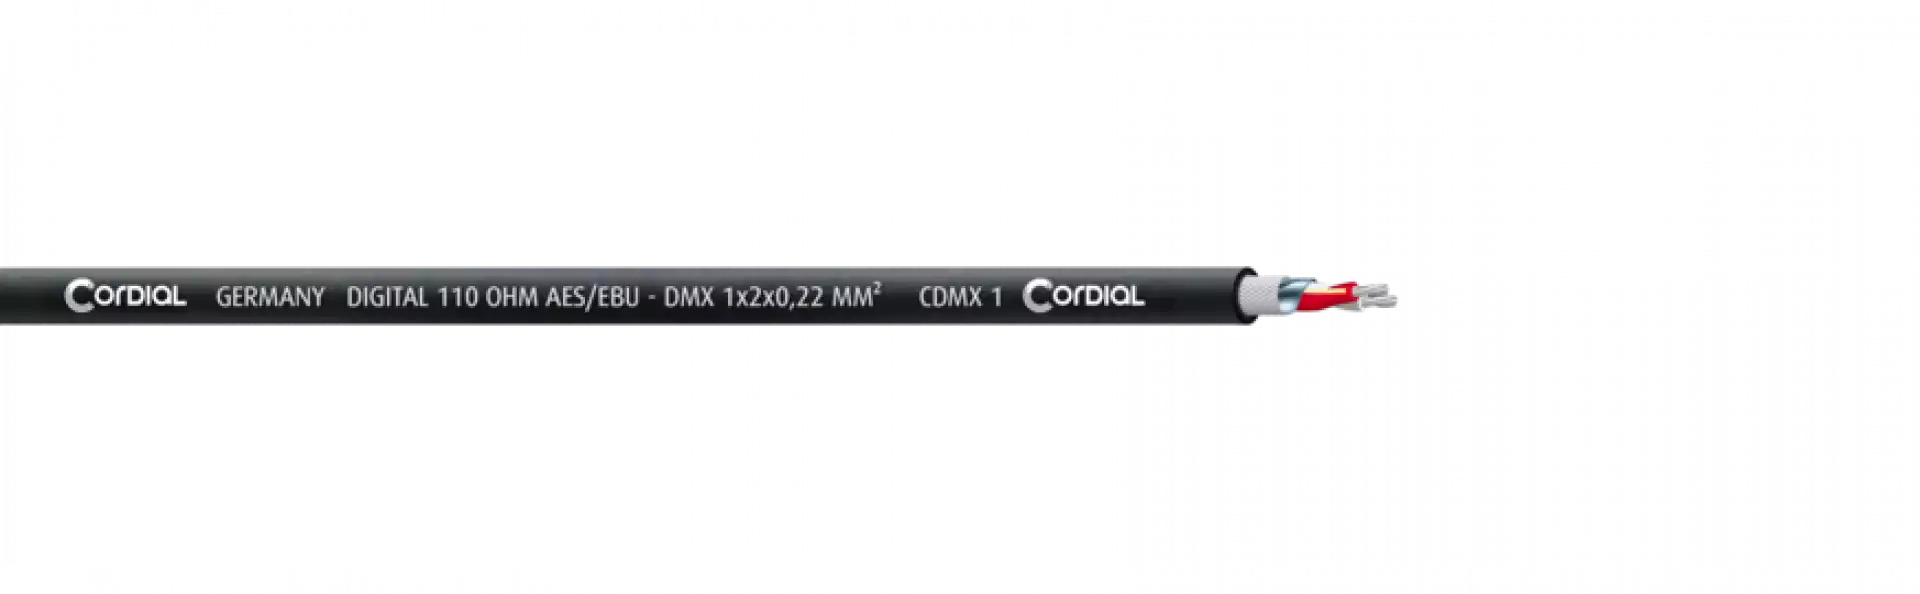 CORDIAL CDMX 1 BLACK 500 FRNC